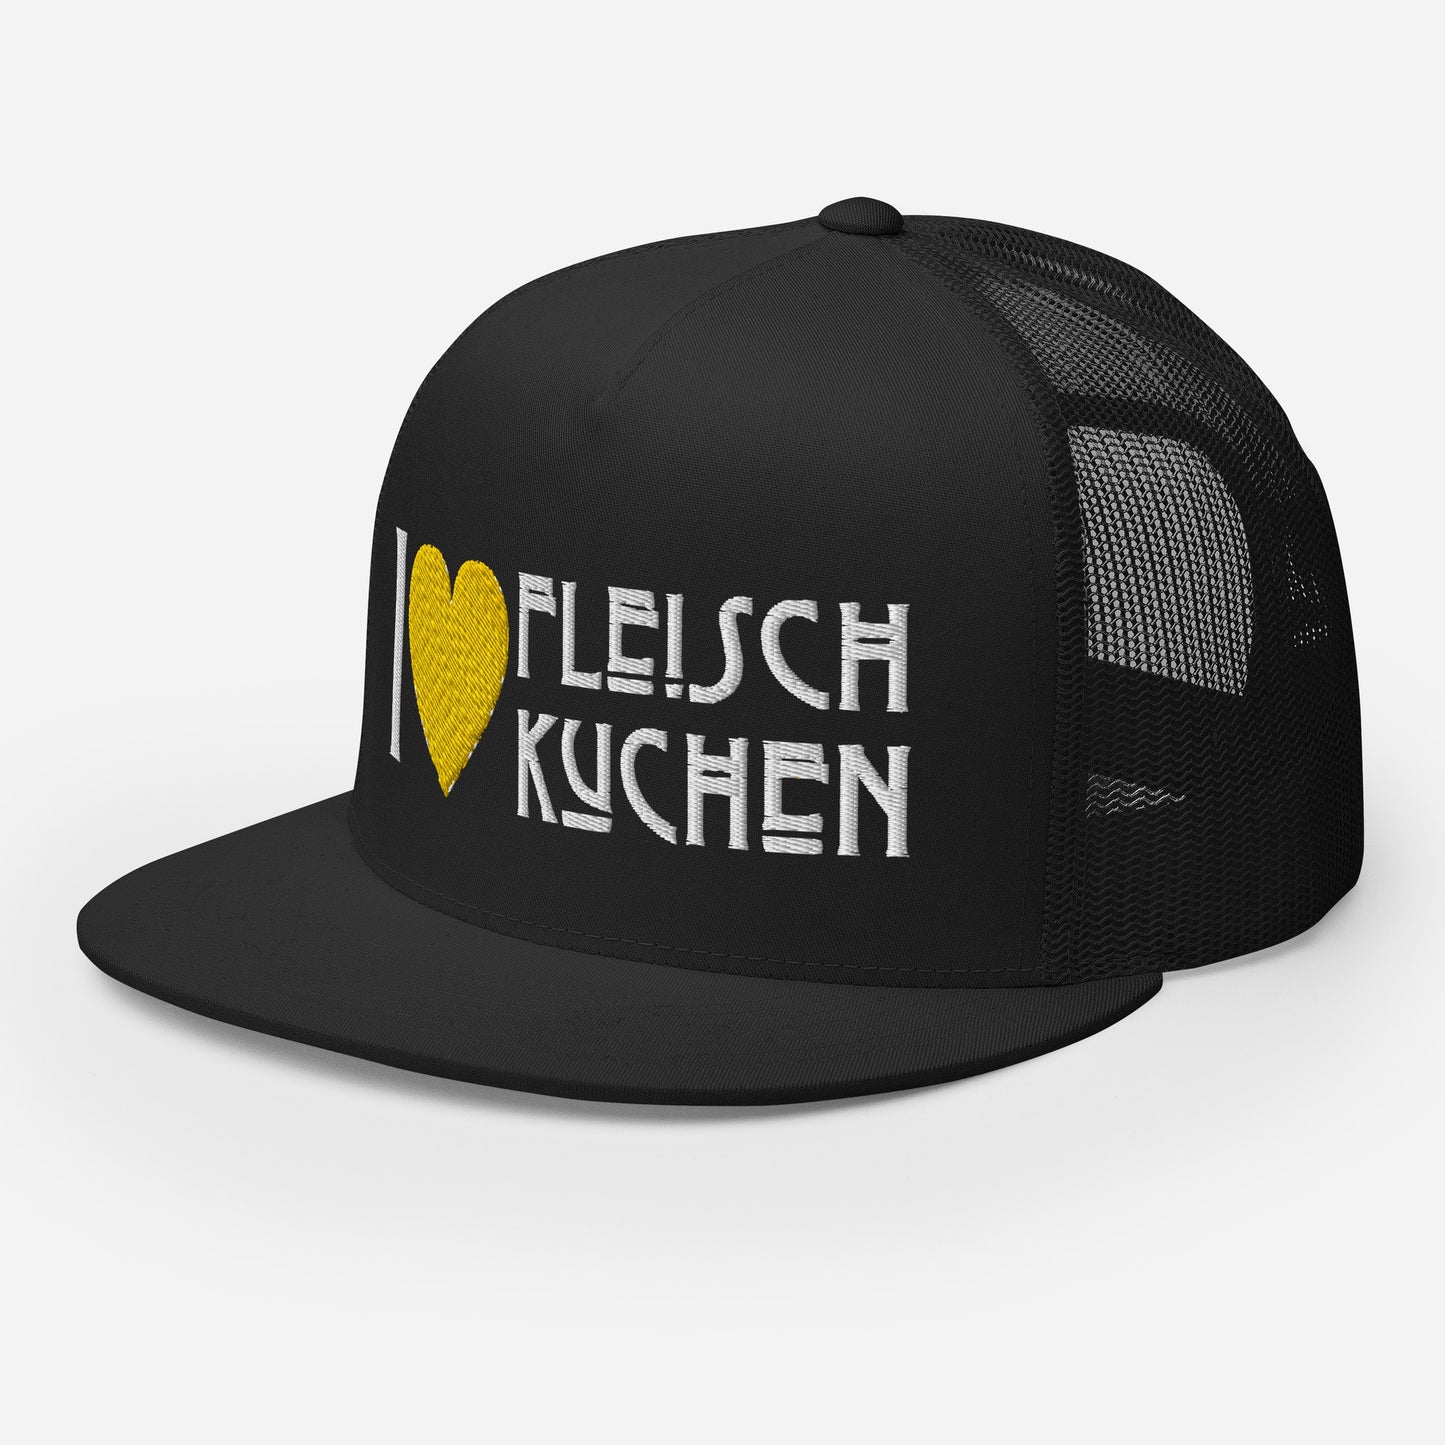 Trucker-Cap - I Love Fleischkuchen